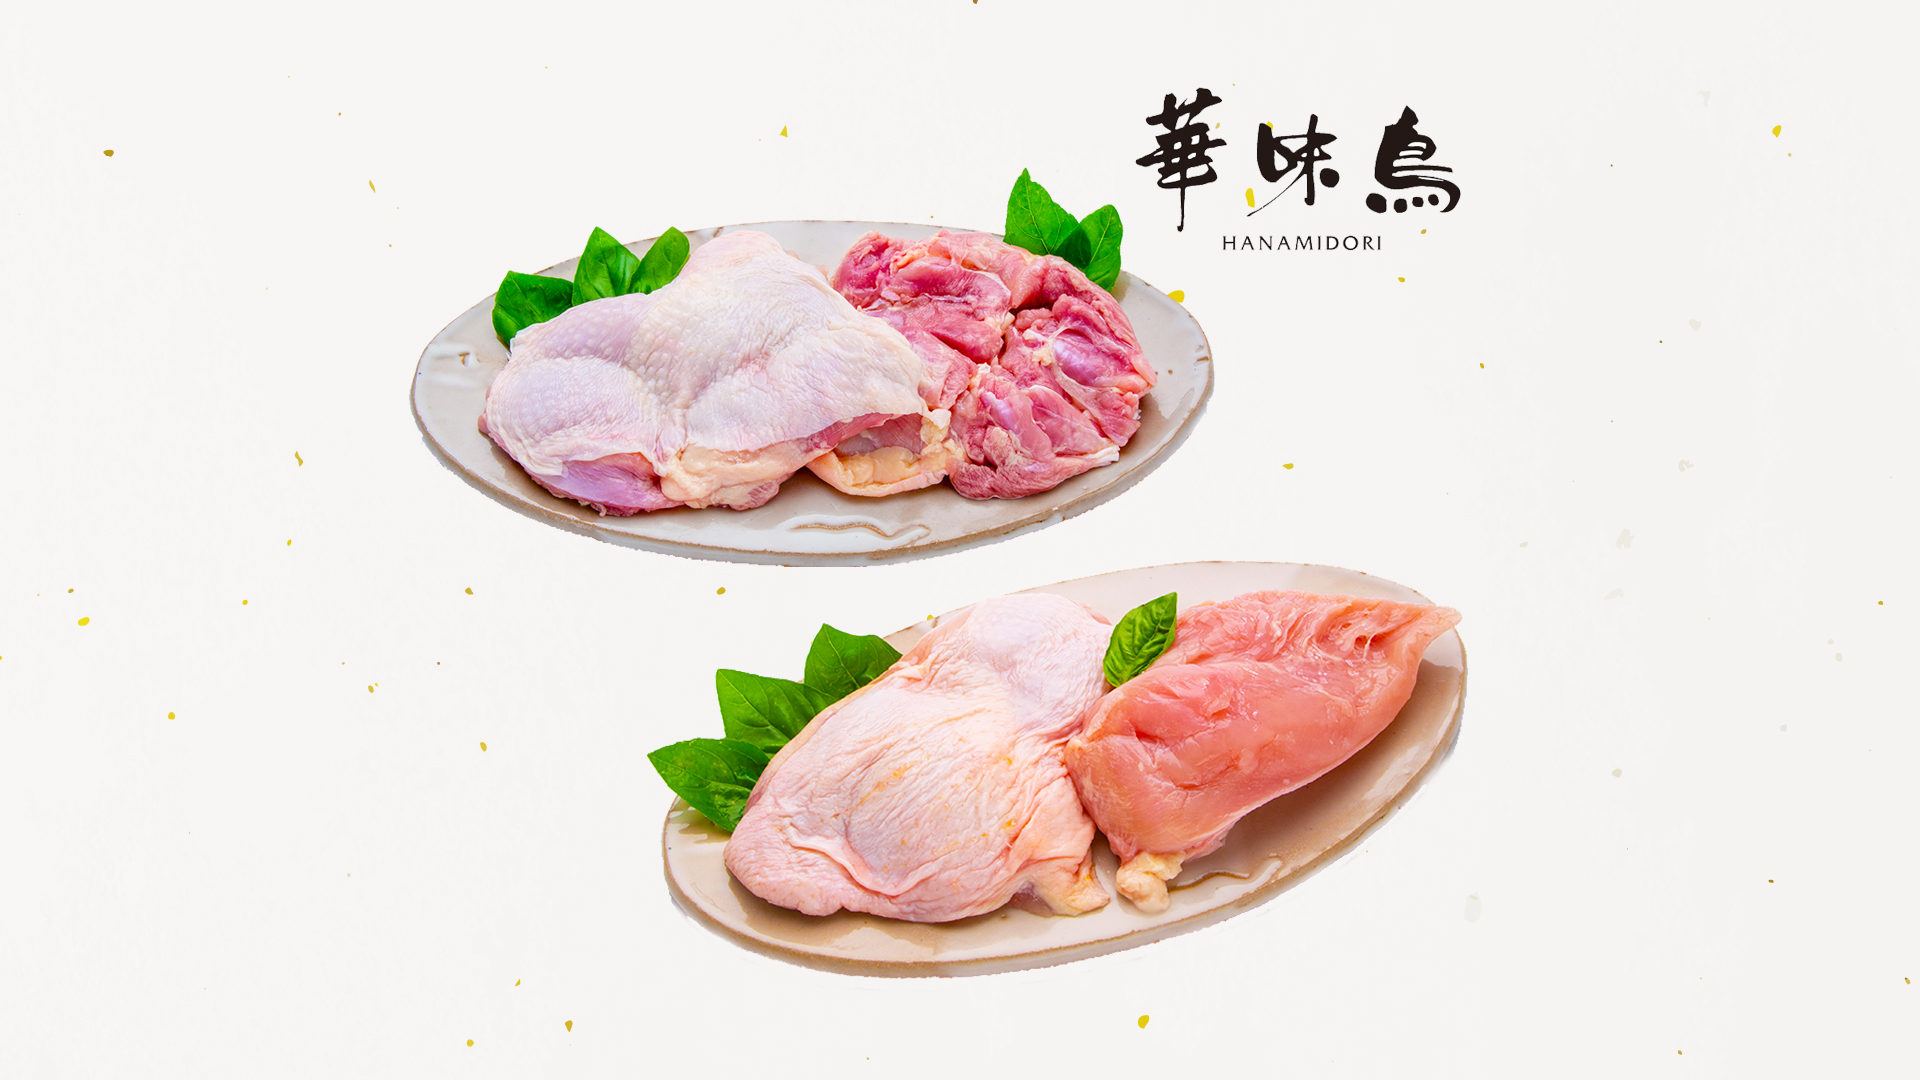 佐賀県唐津市産若鳥もも肉・むね肉セット
華味鳥